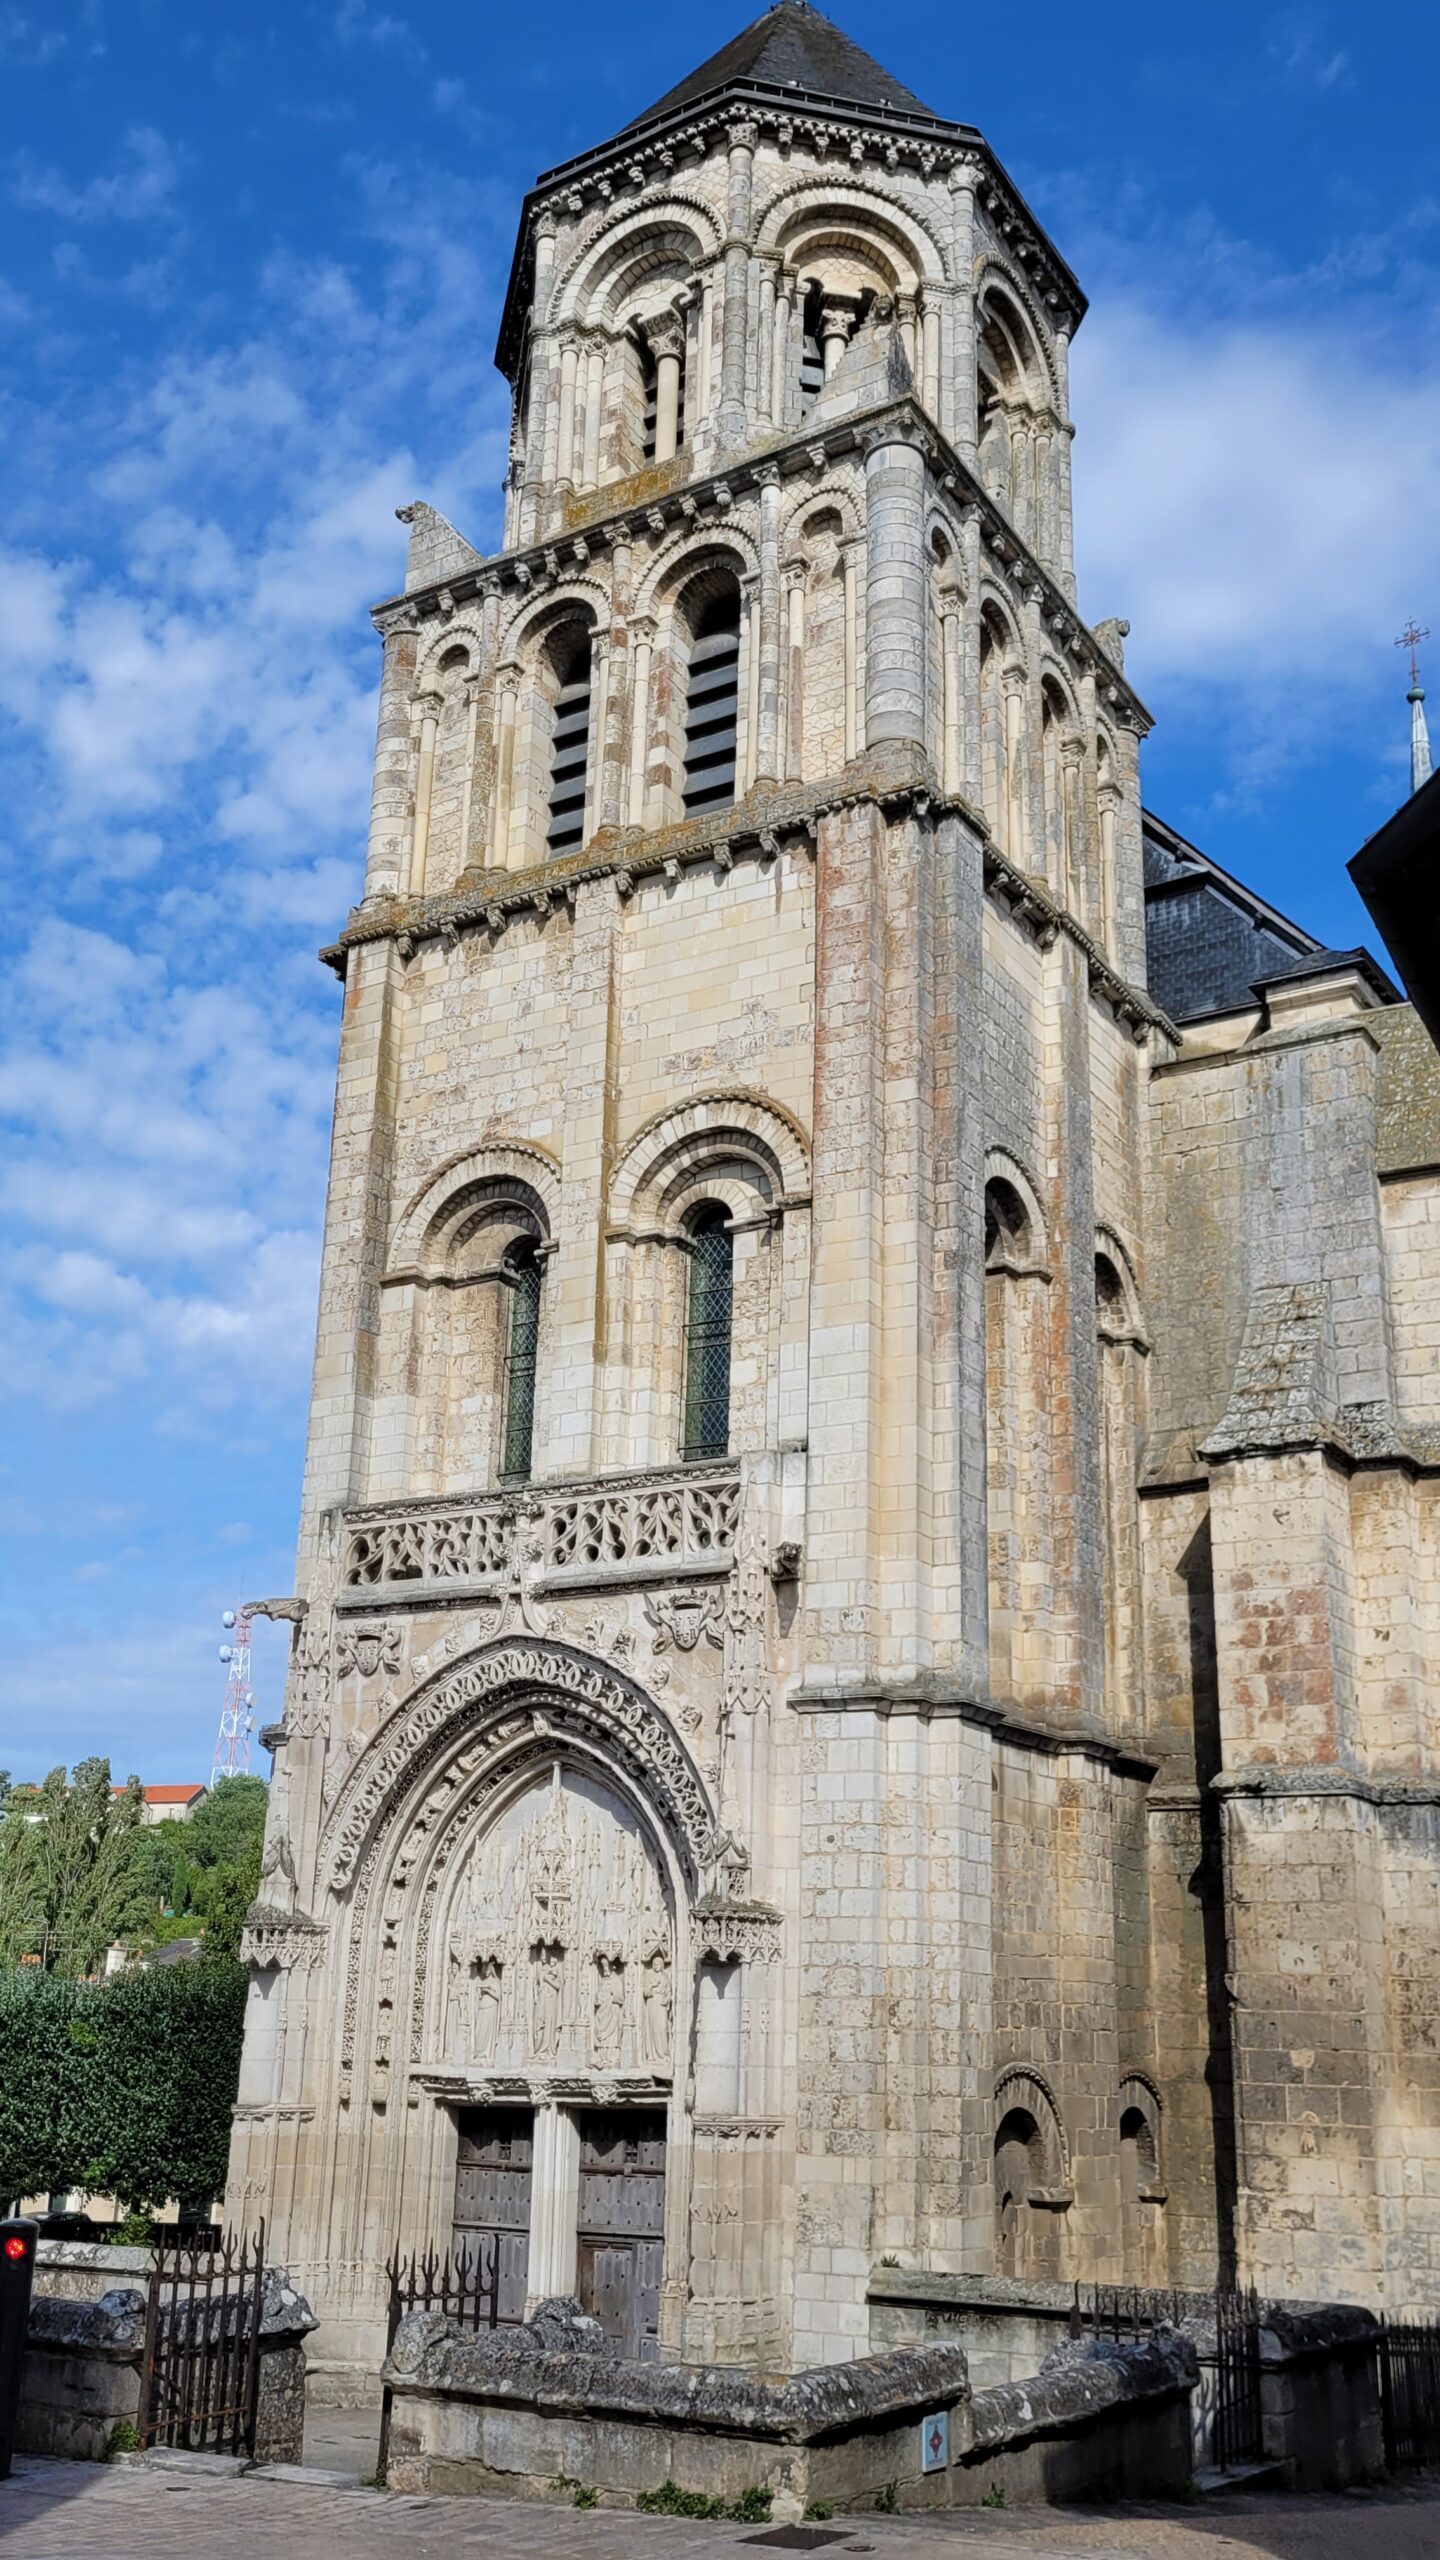 Le clocher de l'église Sainte-Radegonde